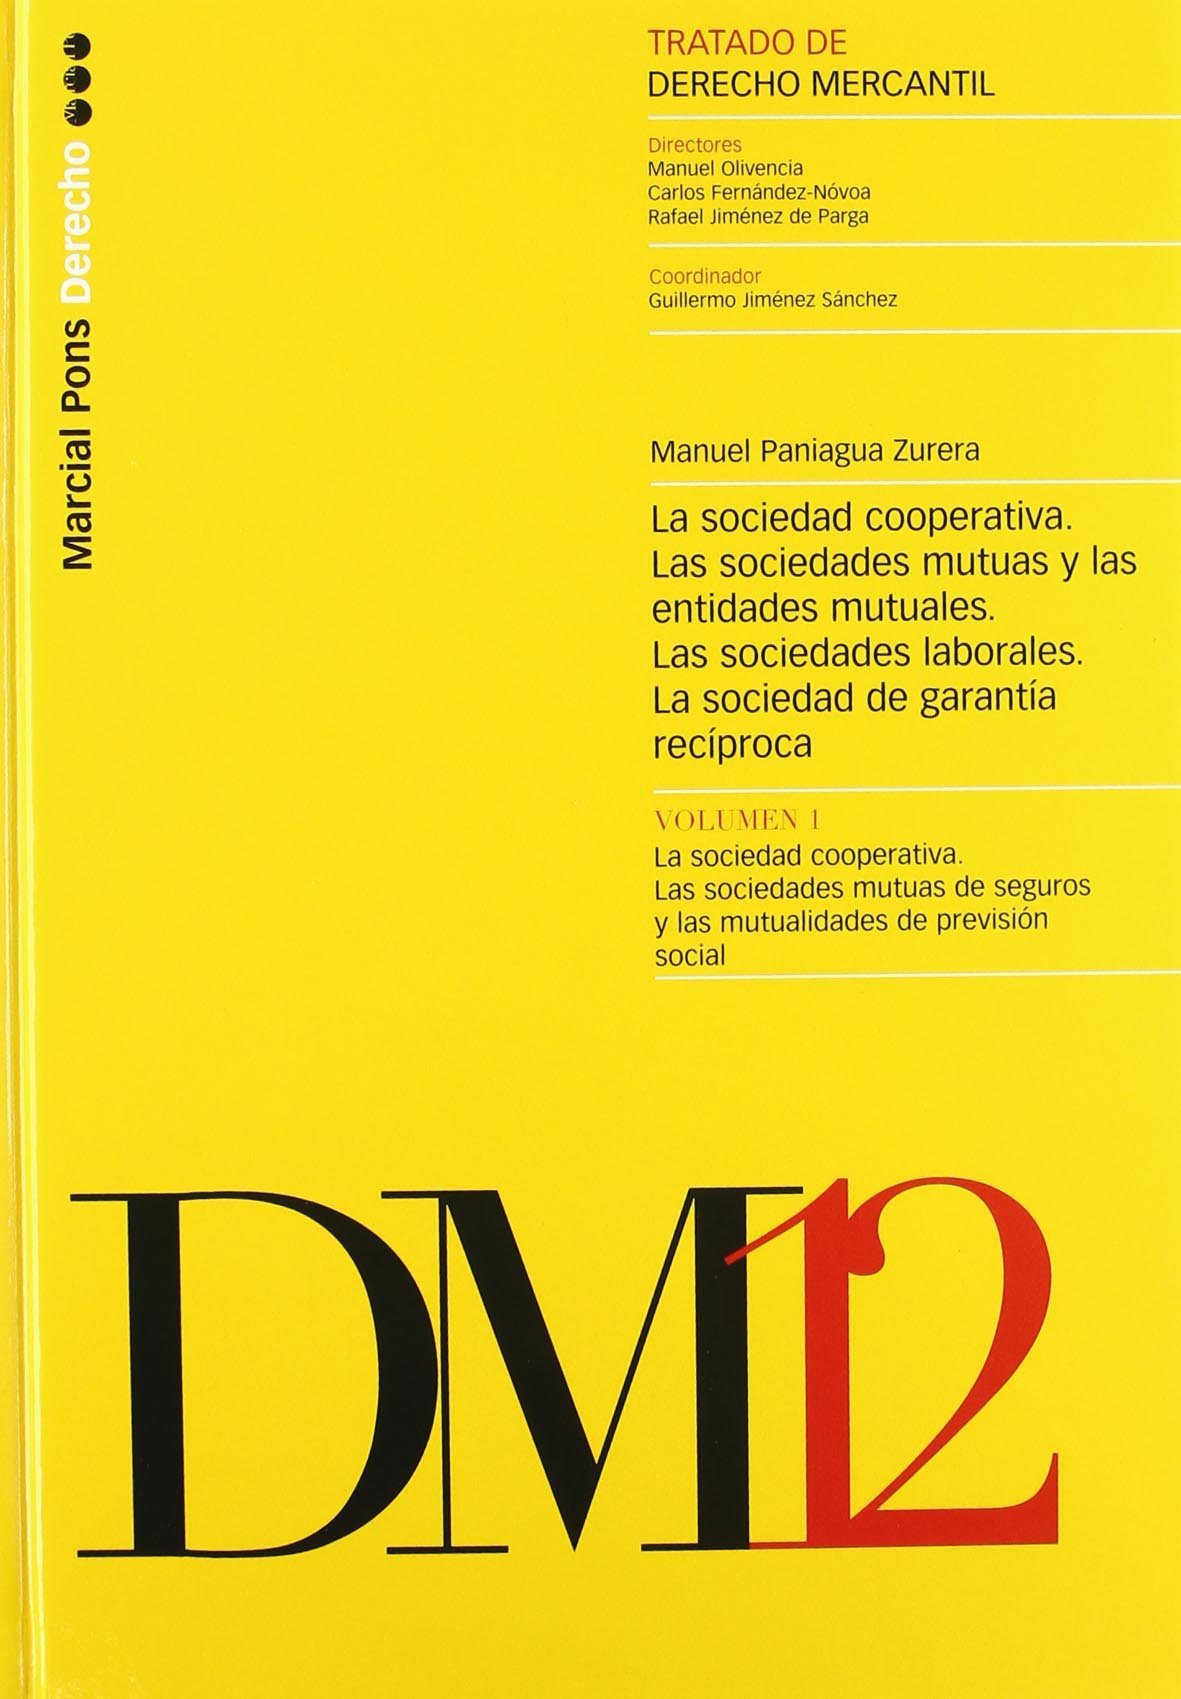 Imagen de portada del libro Las sociedades cooperativas, Las sociedades mutuas de seguros y las mutualidades de previsión social